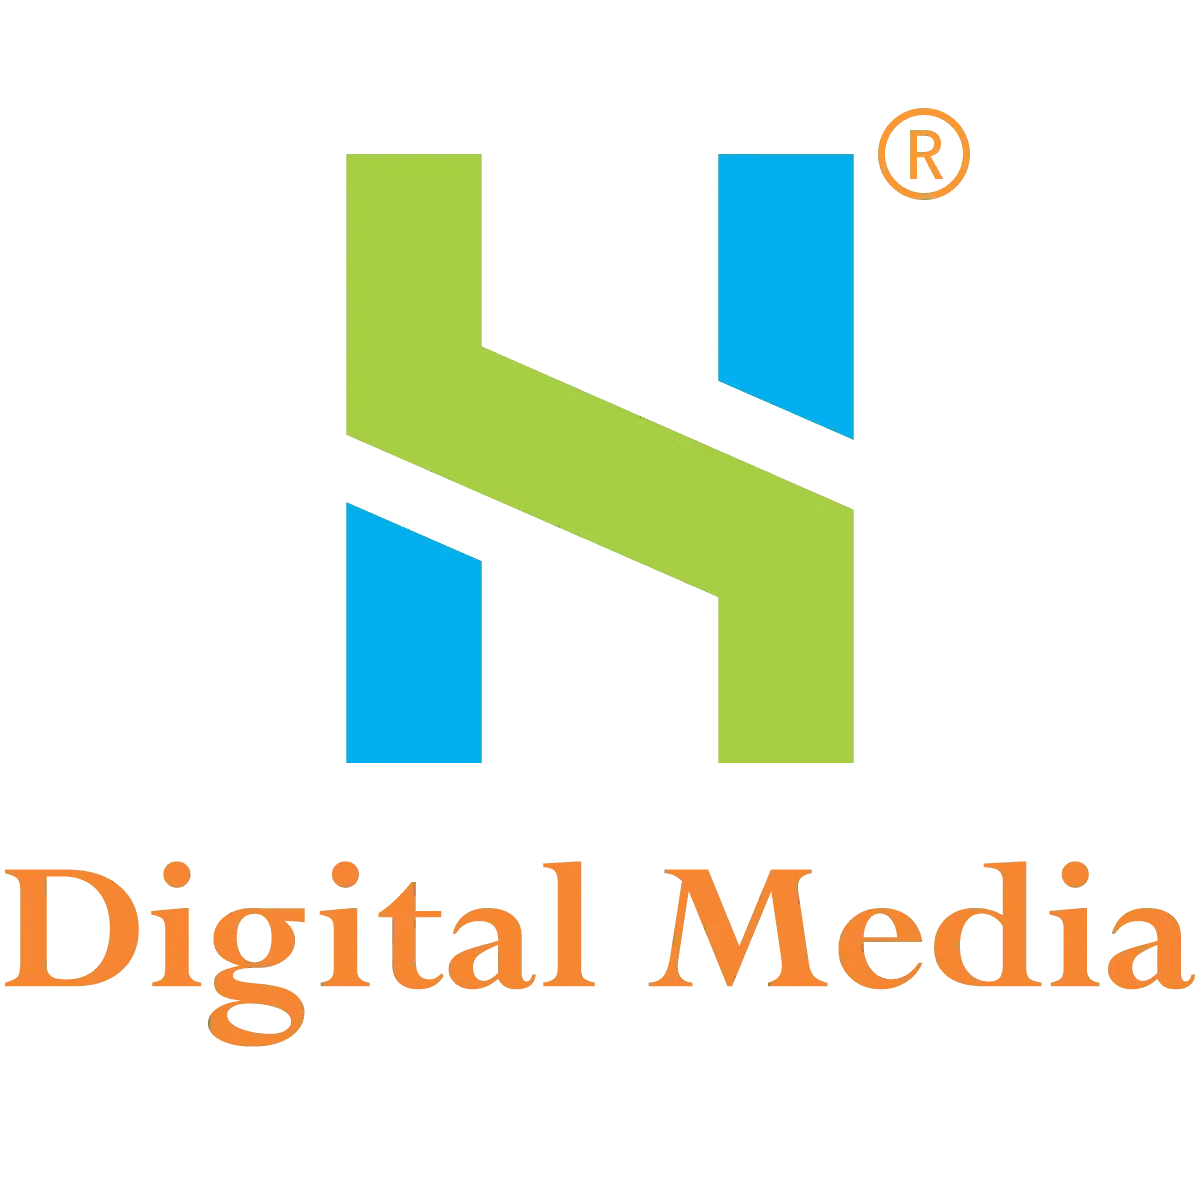 HS Digital Media